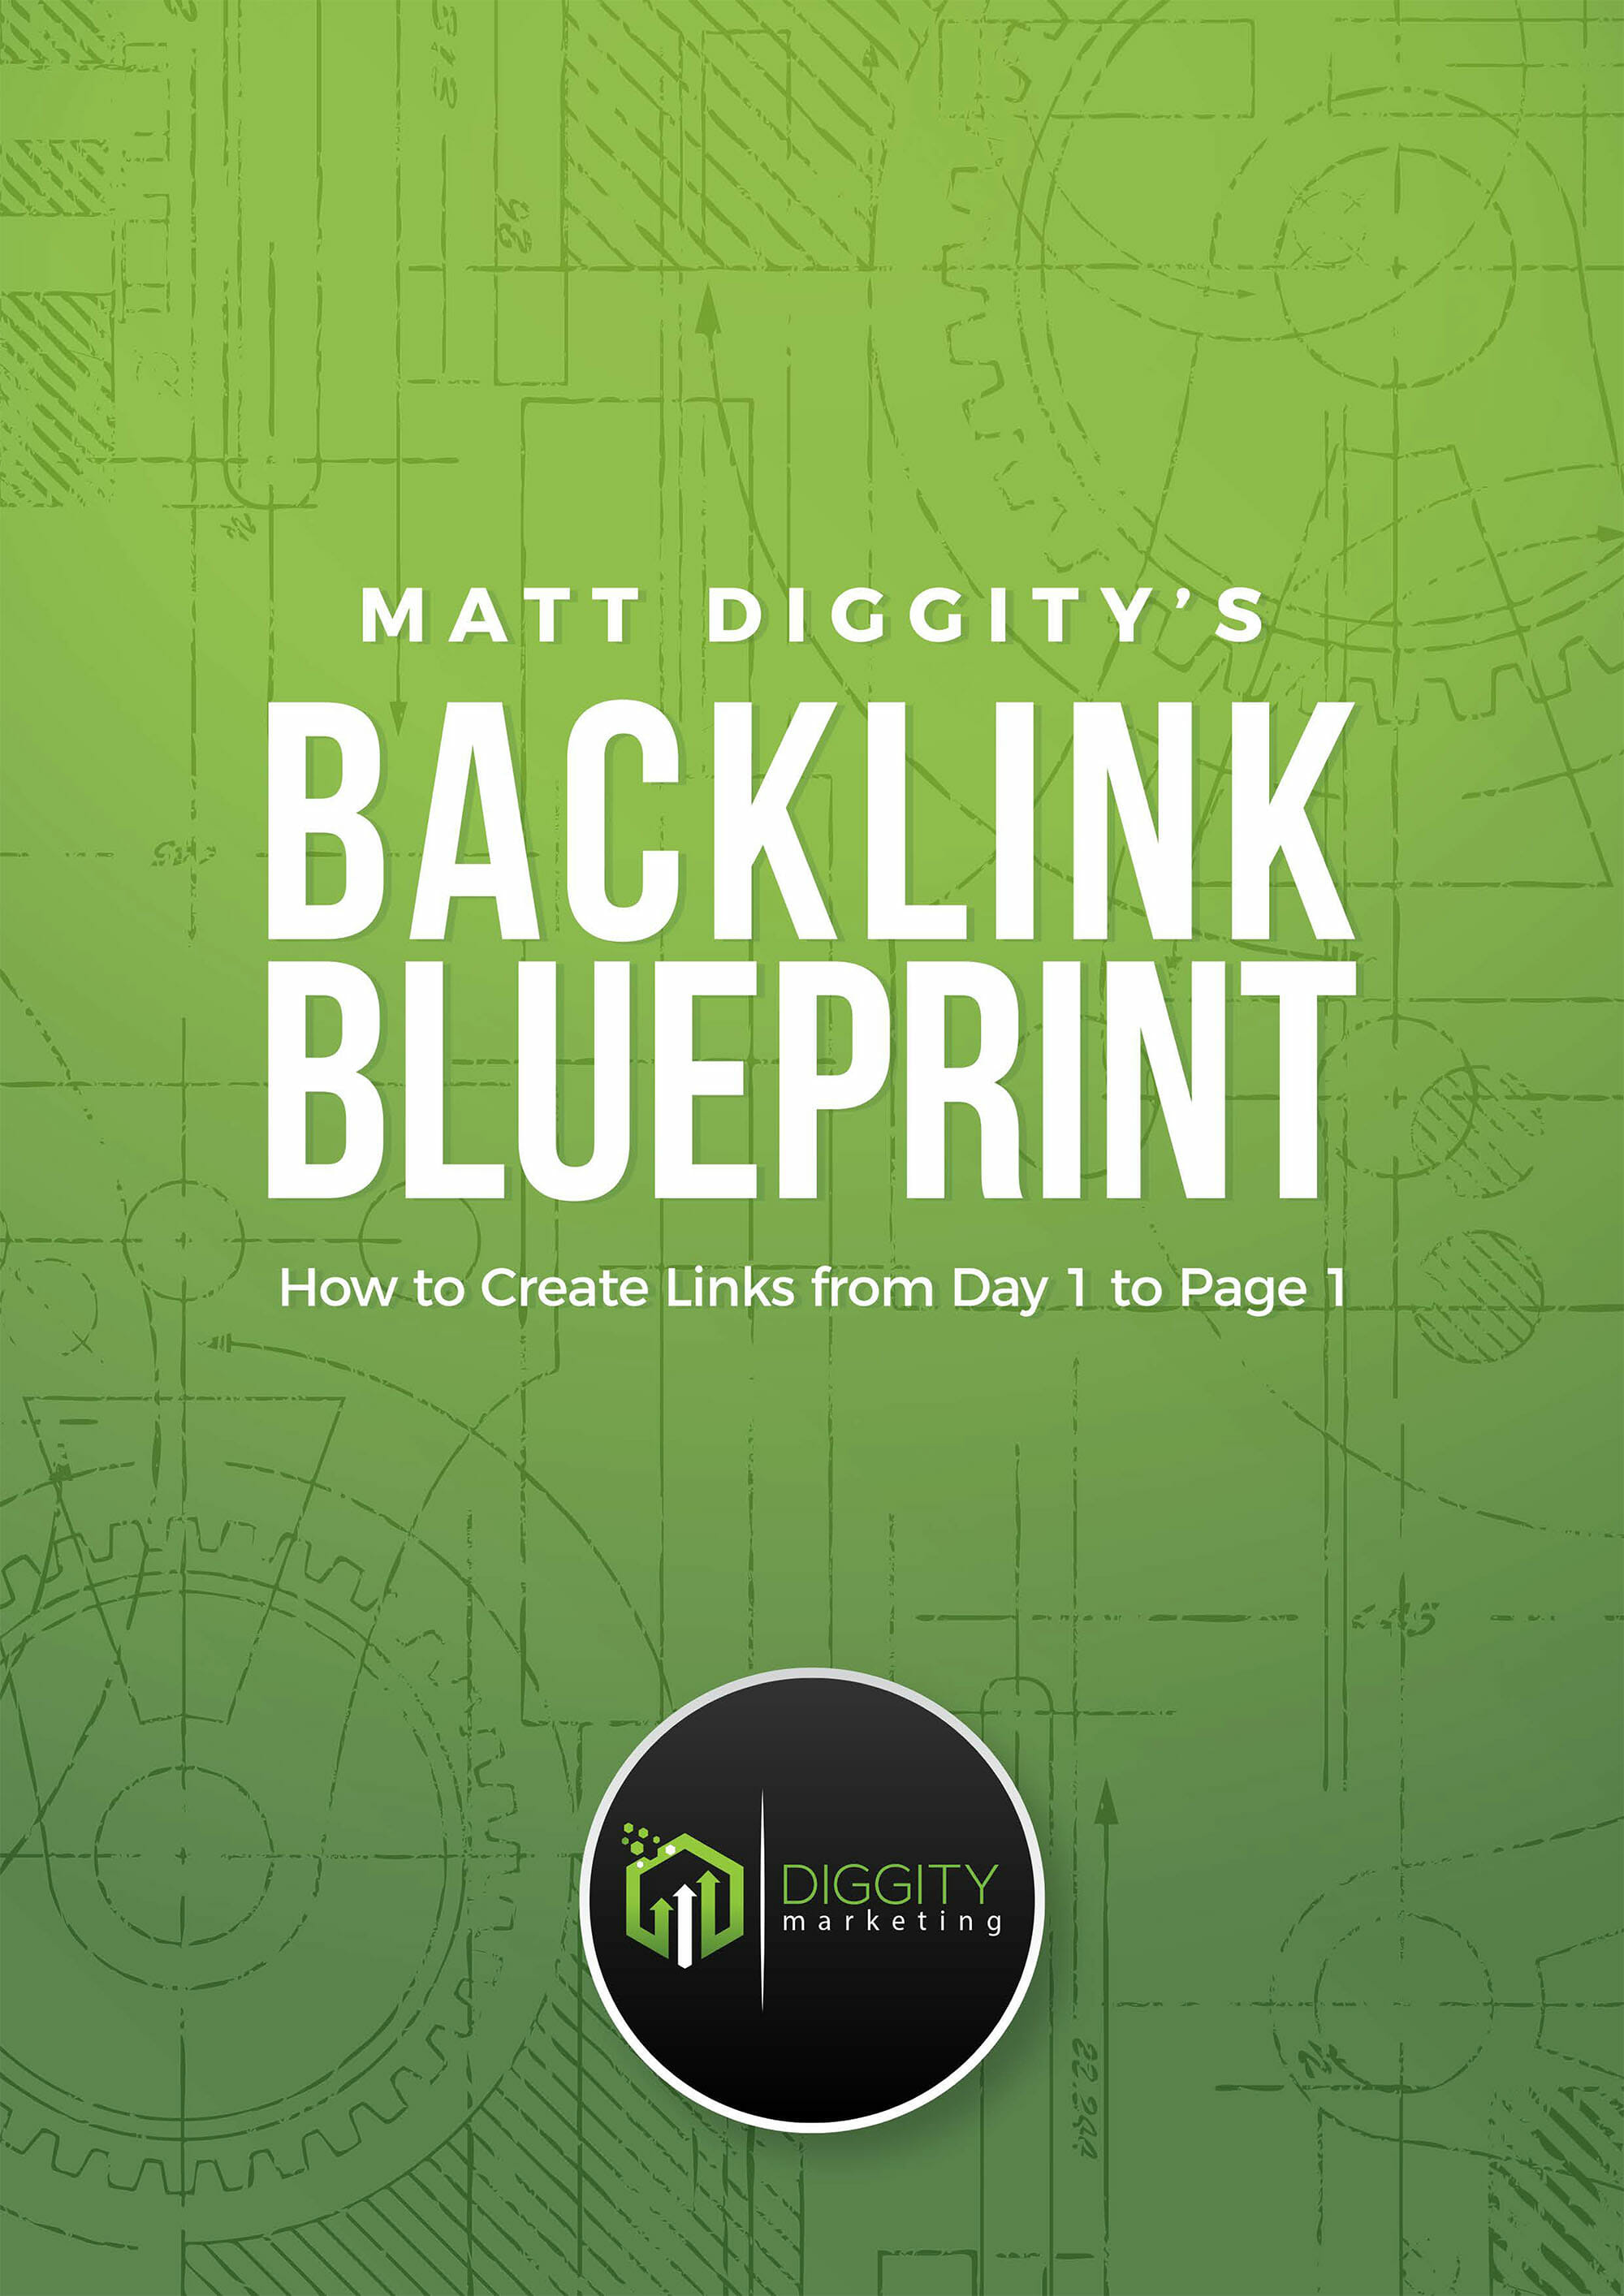 Matt Diggitys Backlink Blueprint